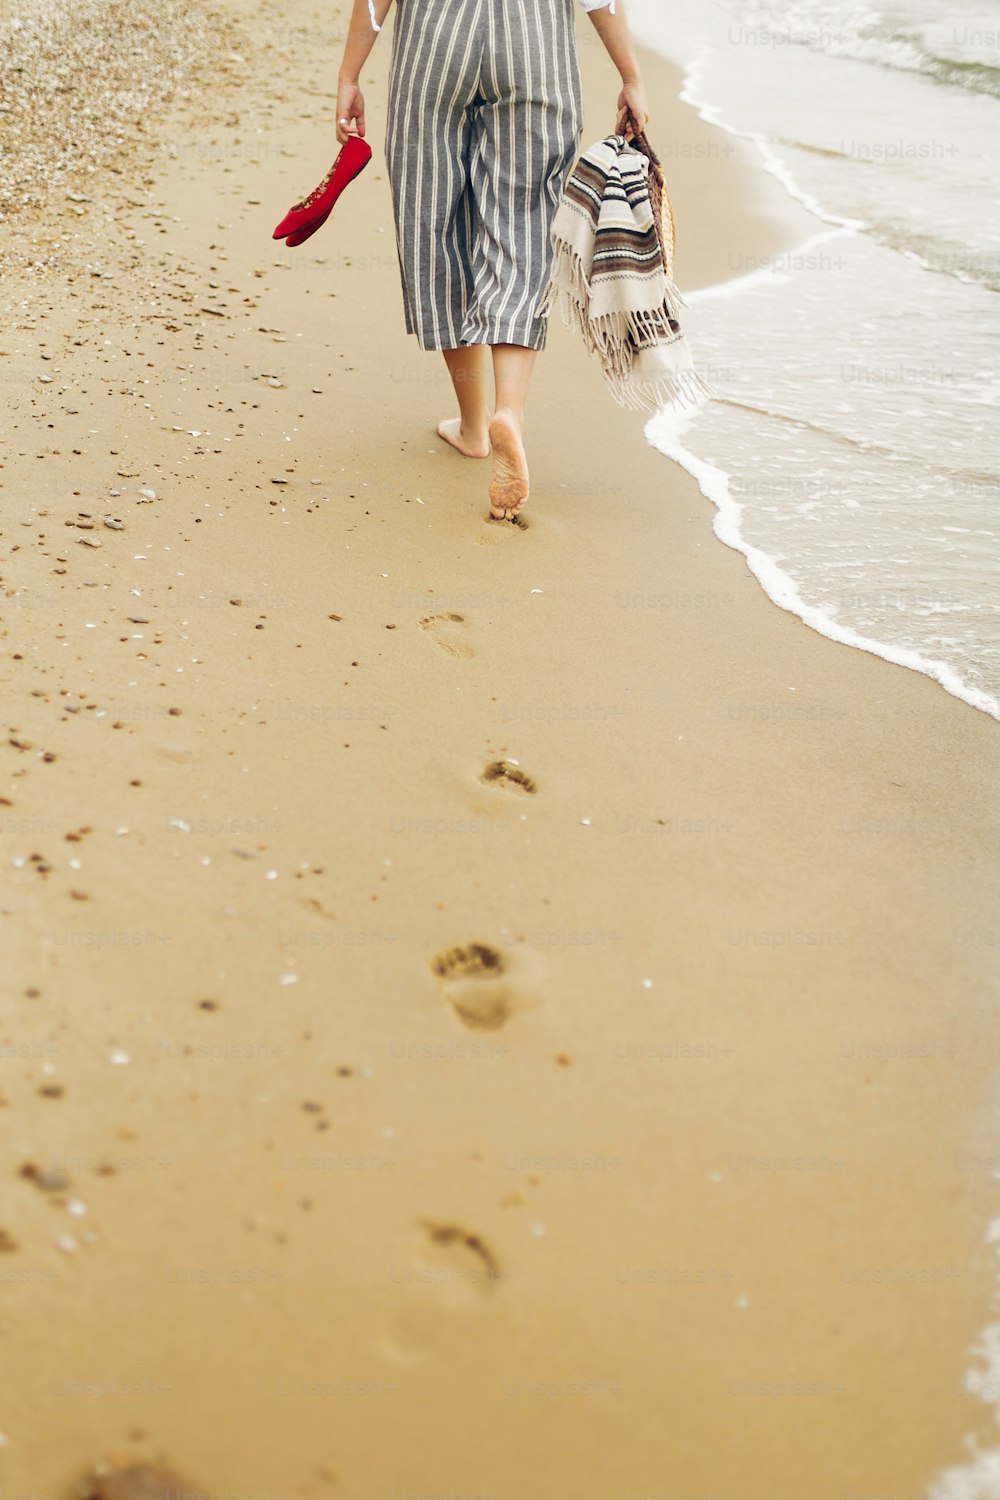 Donna che cammina a piedi nudi sulla spiaggia, vista posteriore delle gambe. Ragazza che si rilassa sulla spiaggia sabbiosa, camminando con le scarpe e la borsa in mano. Concetto di vacanza estiva